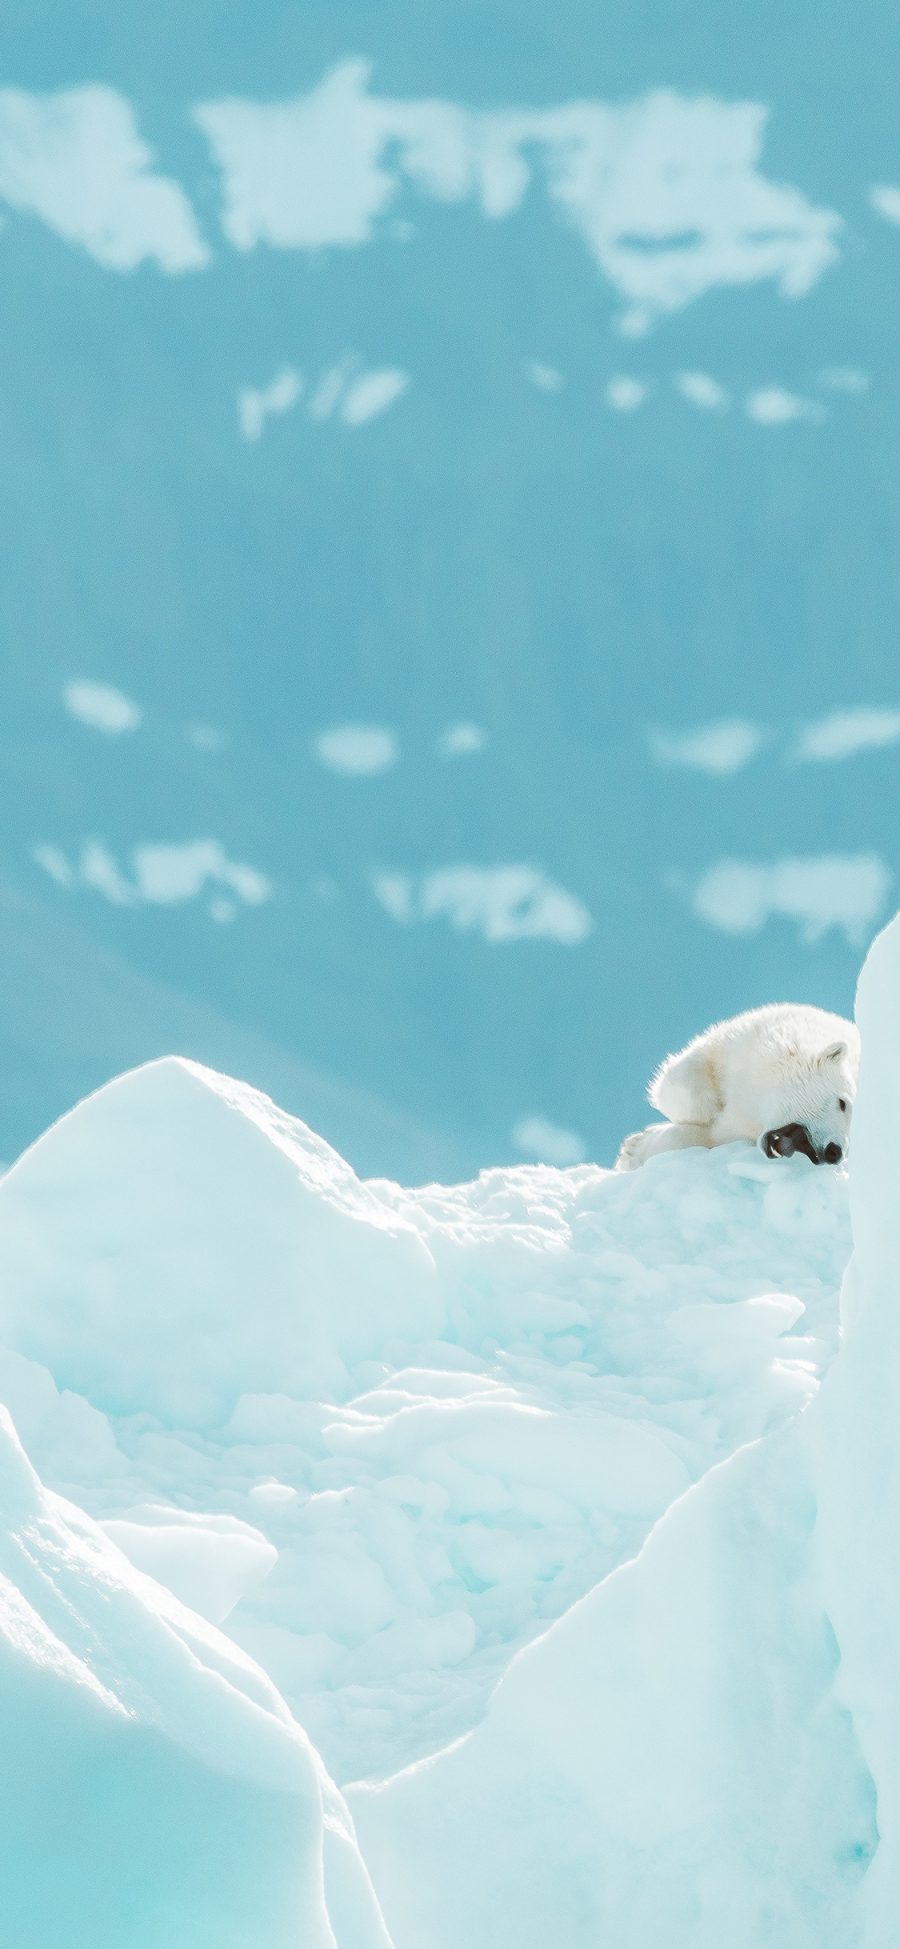 [2436×1125]冰川 冰山 北极熊 幼熊 苹果手机壁纸图片